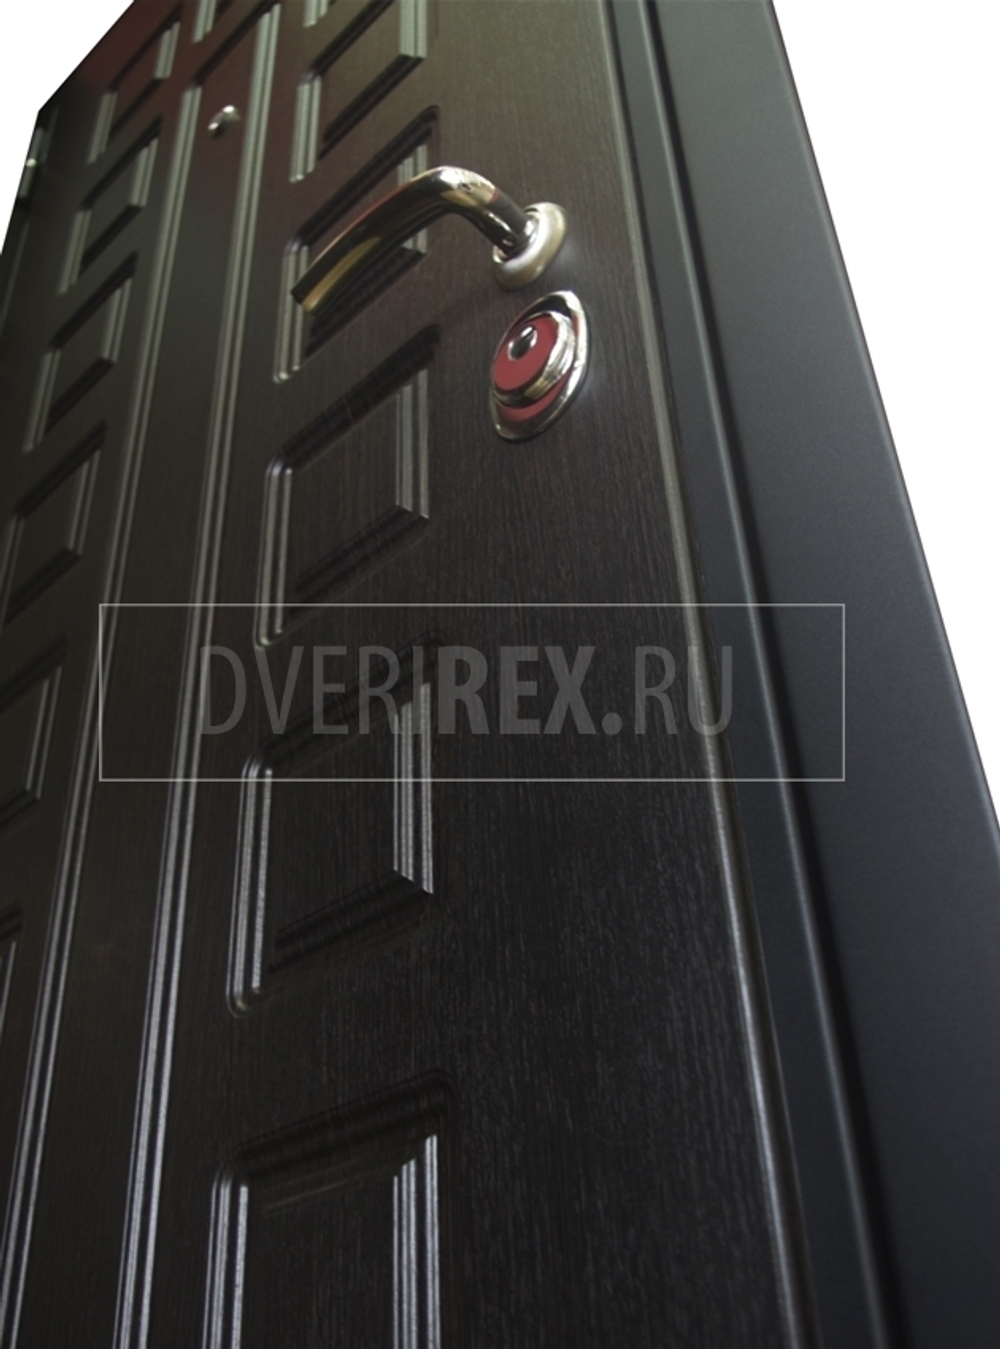 Входная металлическая дверь  с зеркалом RеX (РЕКС) Премиум 3К Венге (Гладиатор) / СБ-16 Силк сноу (белый матовый, без текстуры)